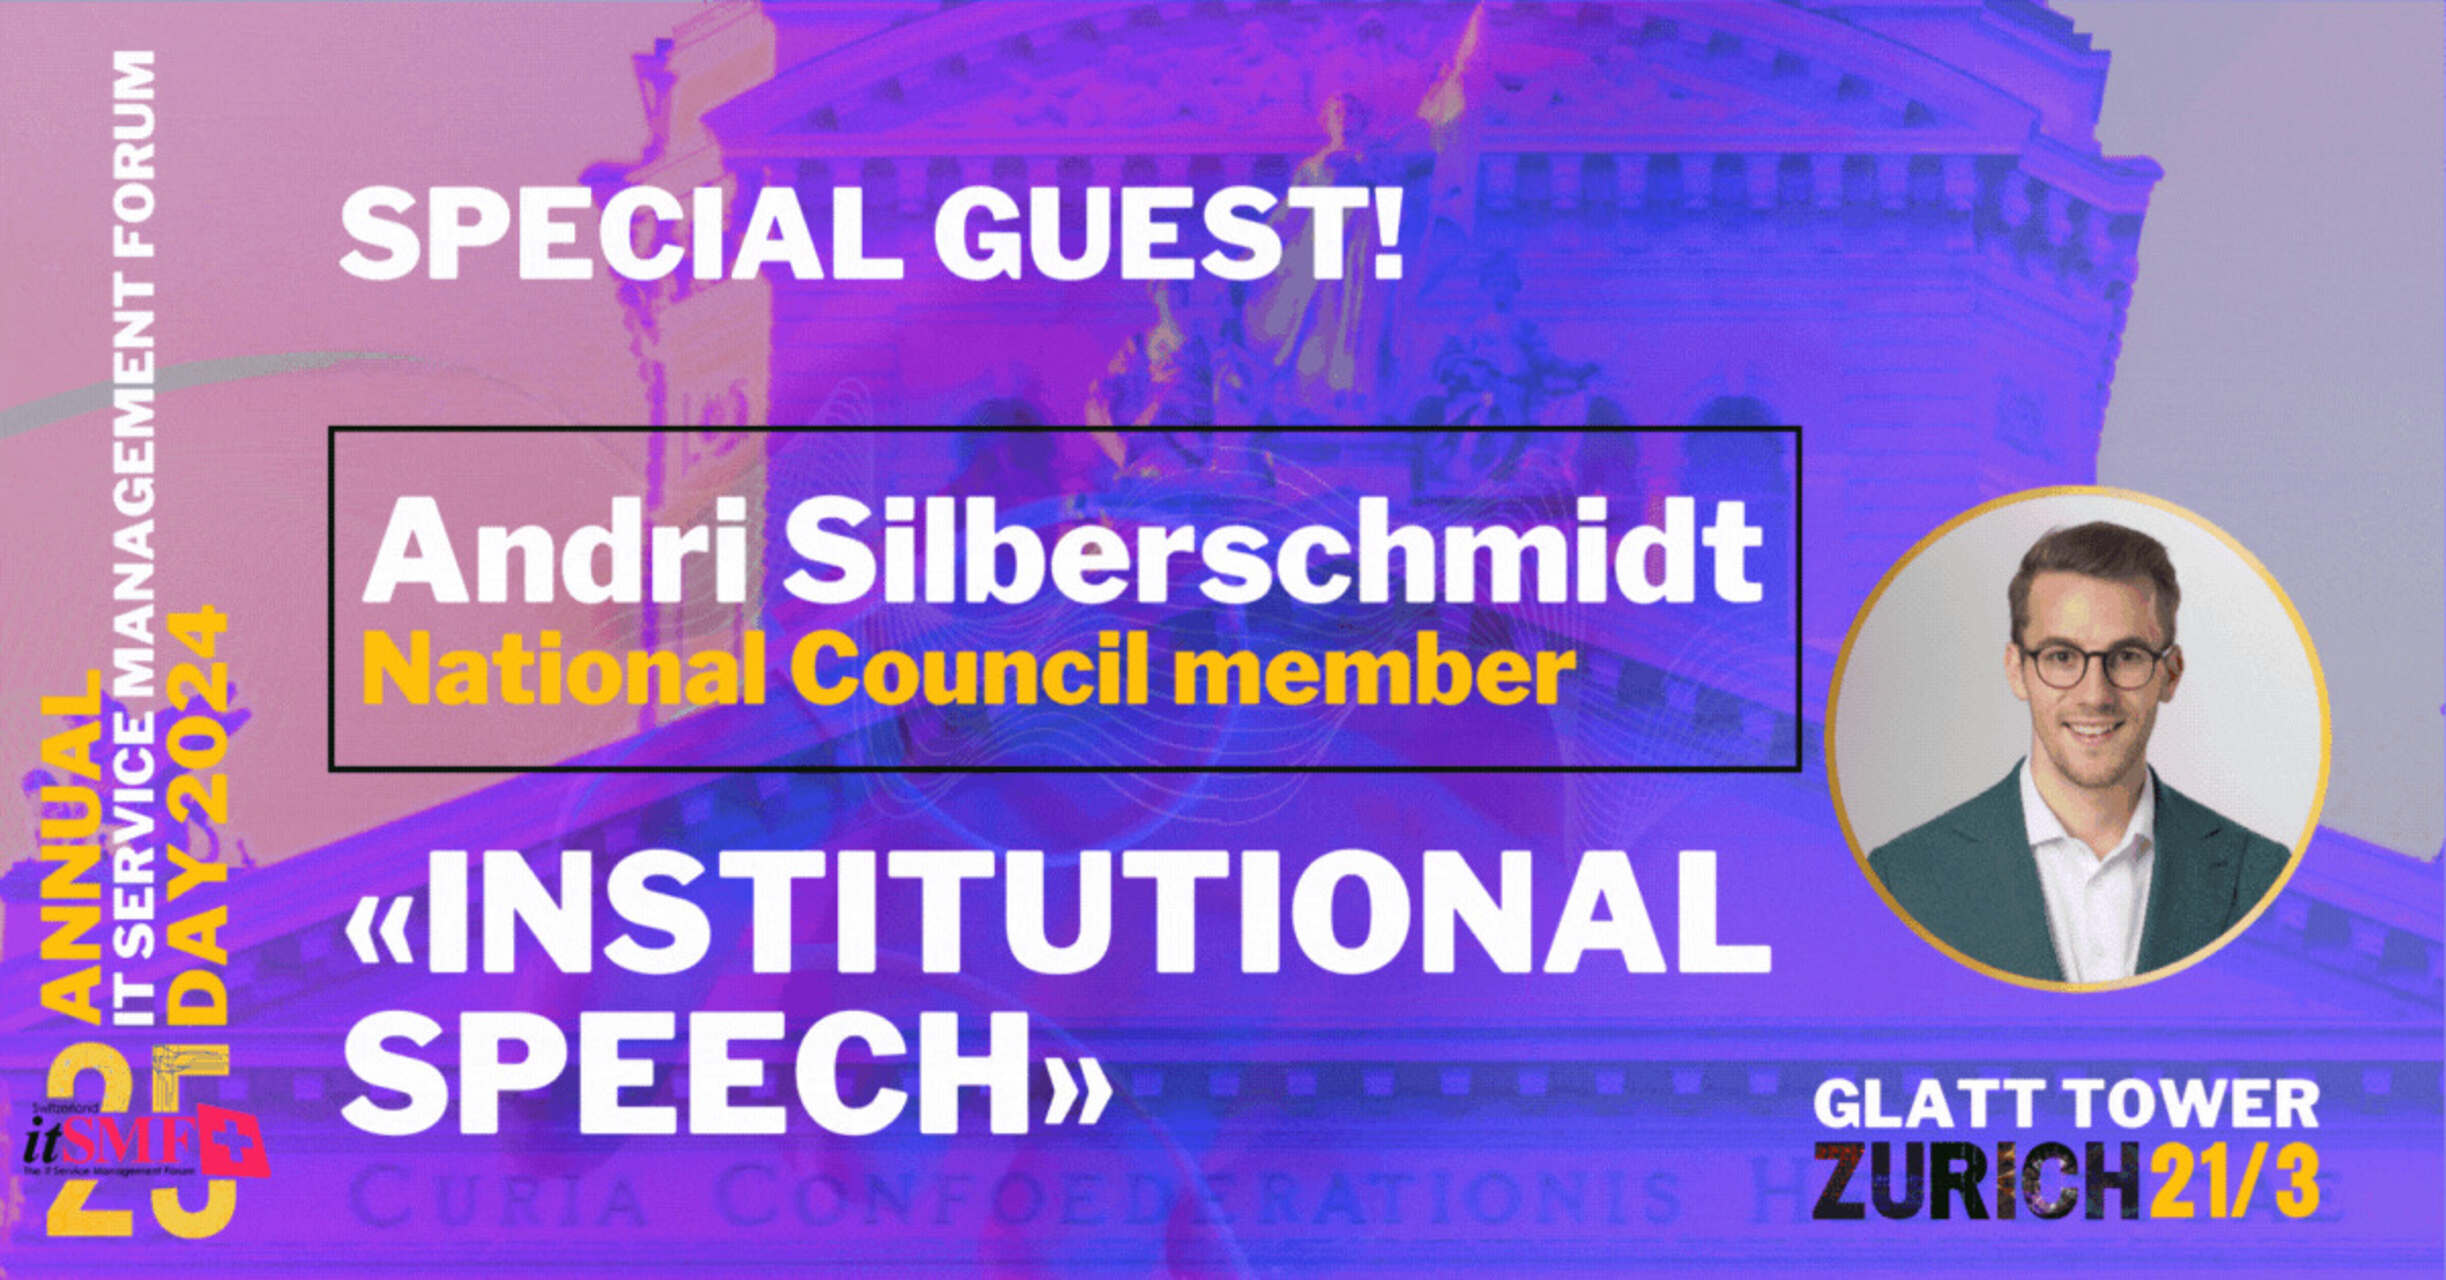 Gestió del servei: Andri Silberschmidt, empresari i membre del Consell Nacional Suís, pronunciarà el discurs institucional a l'esdeveniment anual itSMF a Zuric-Wallisellen el 21 de març de 2024.